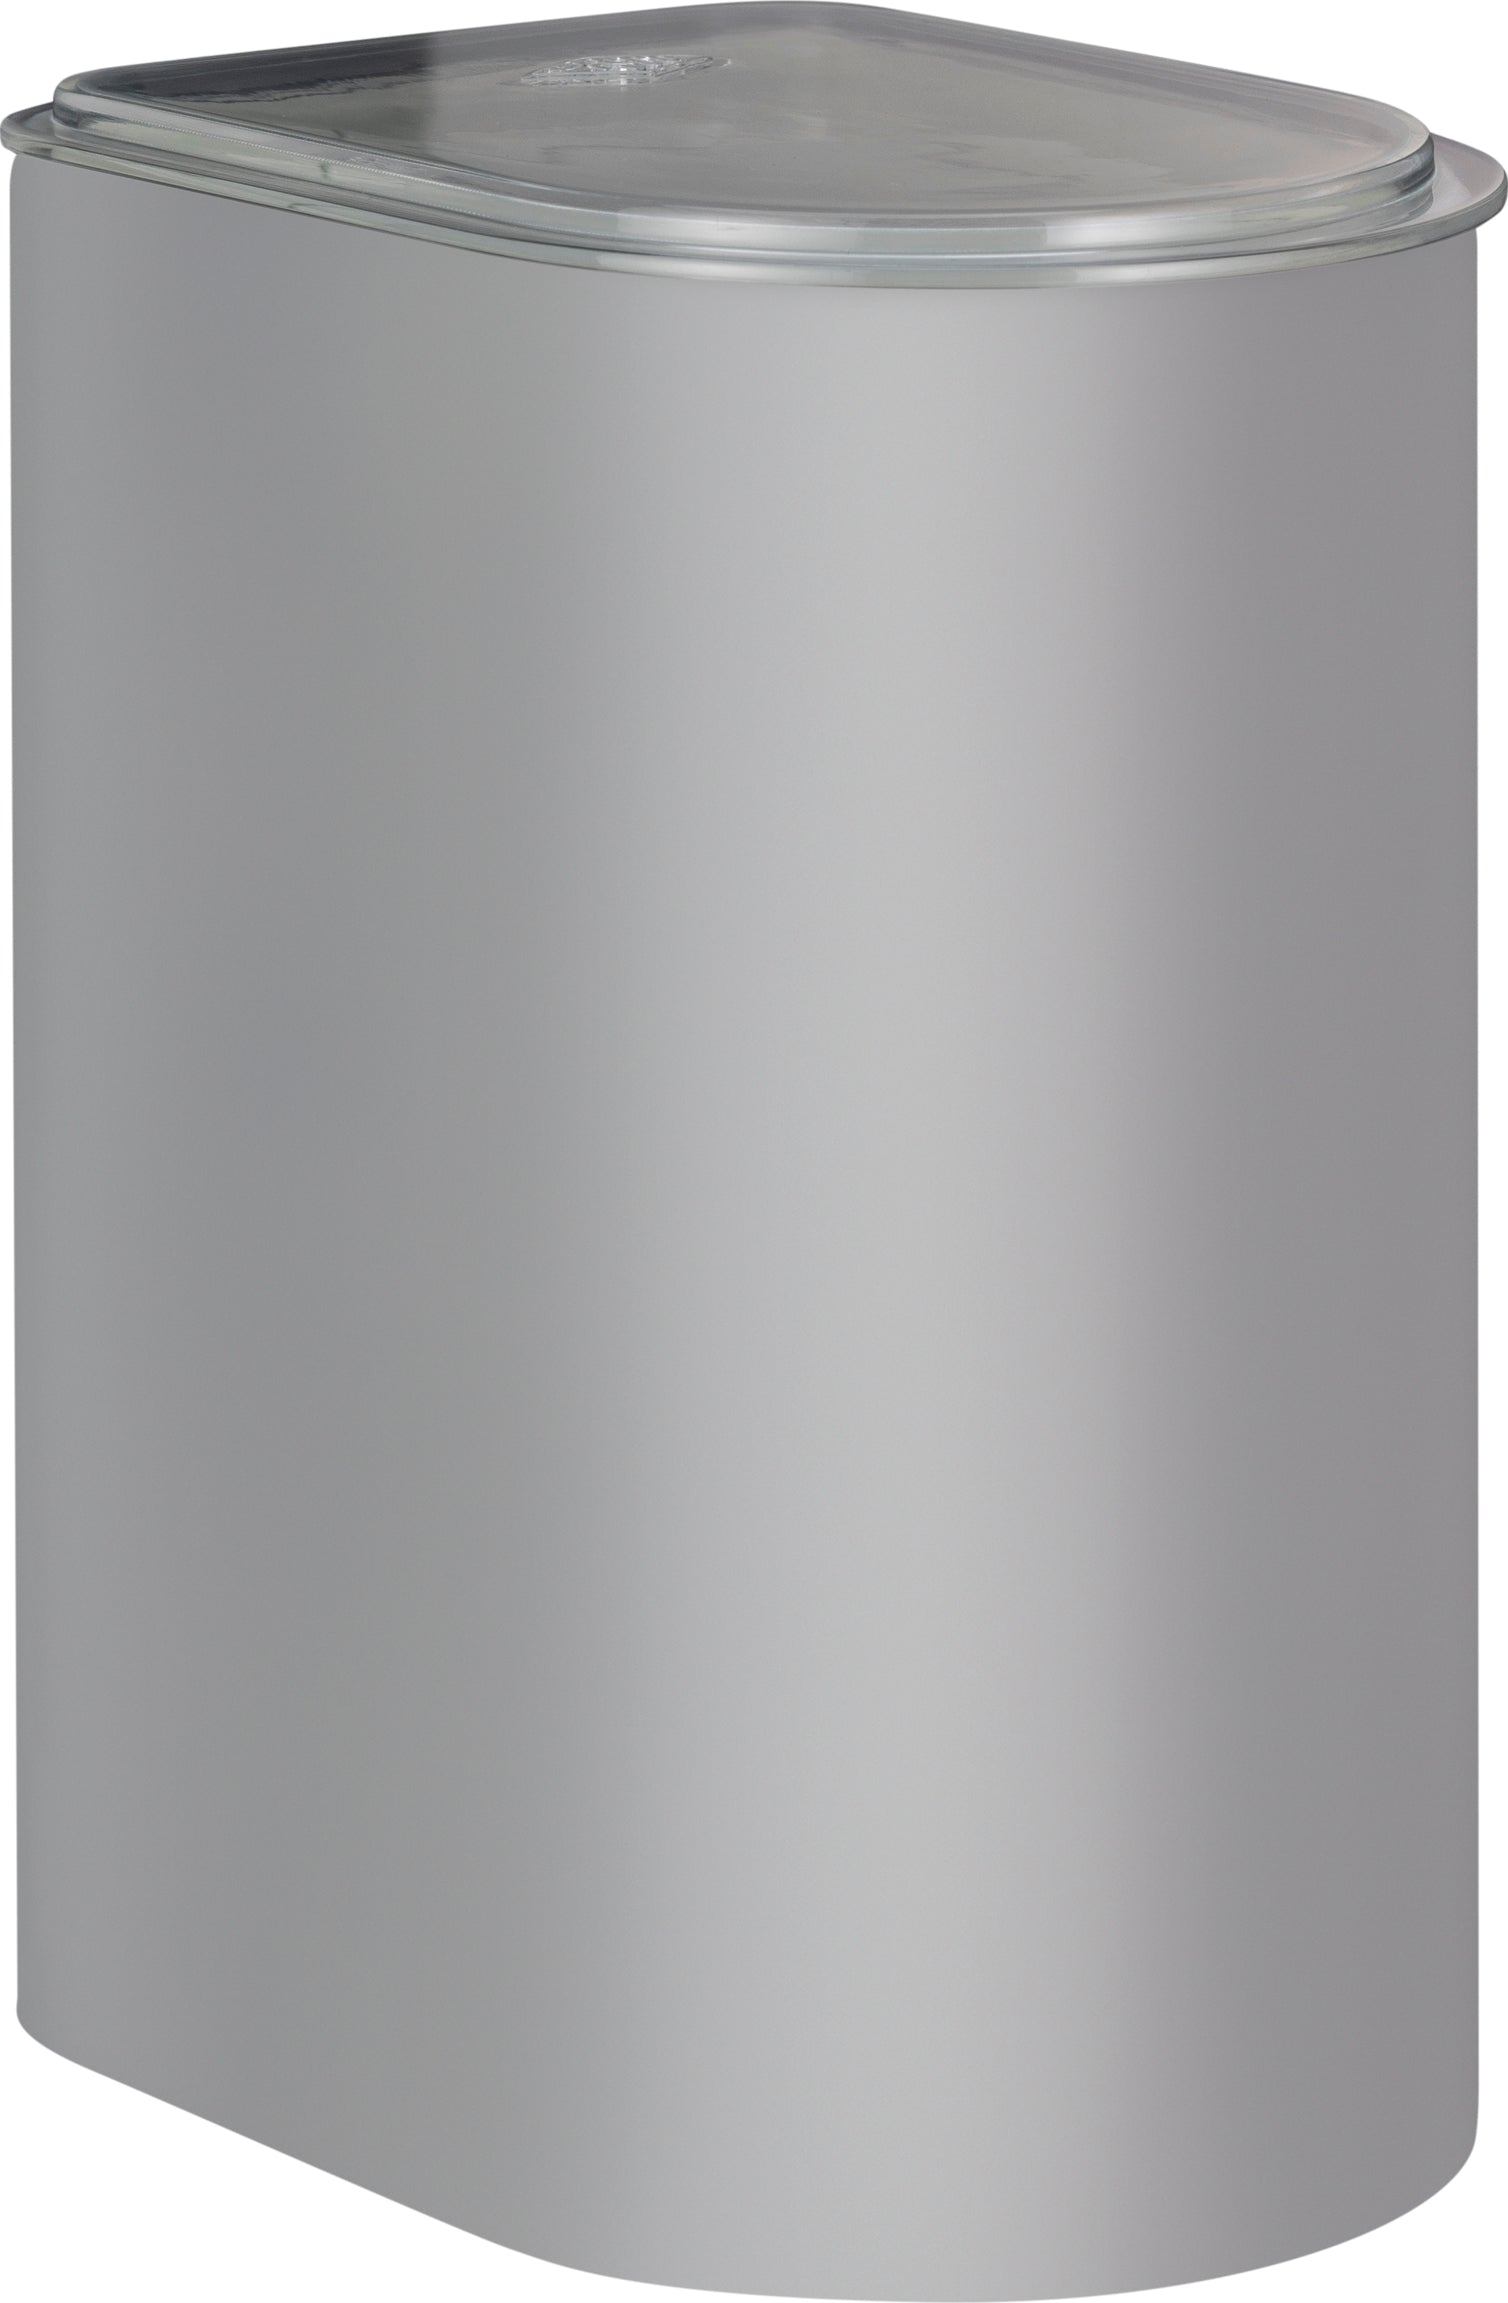 Wesco Kapsel 3 liter med akryl lock, sval grå matt